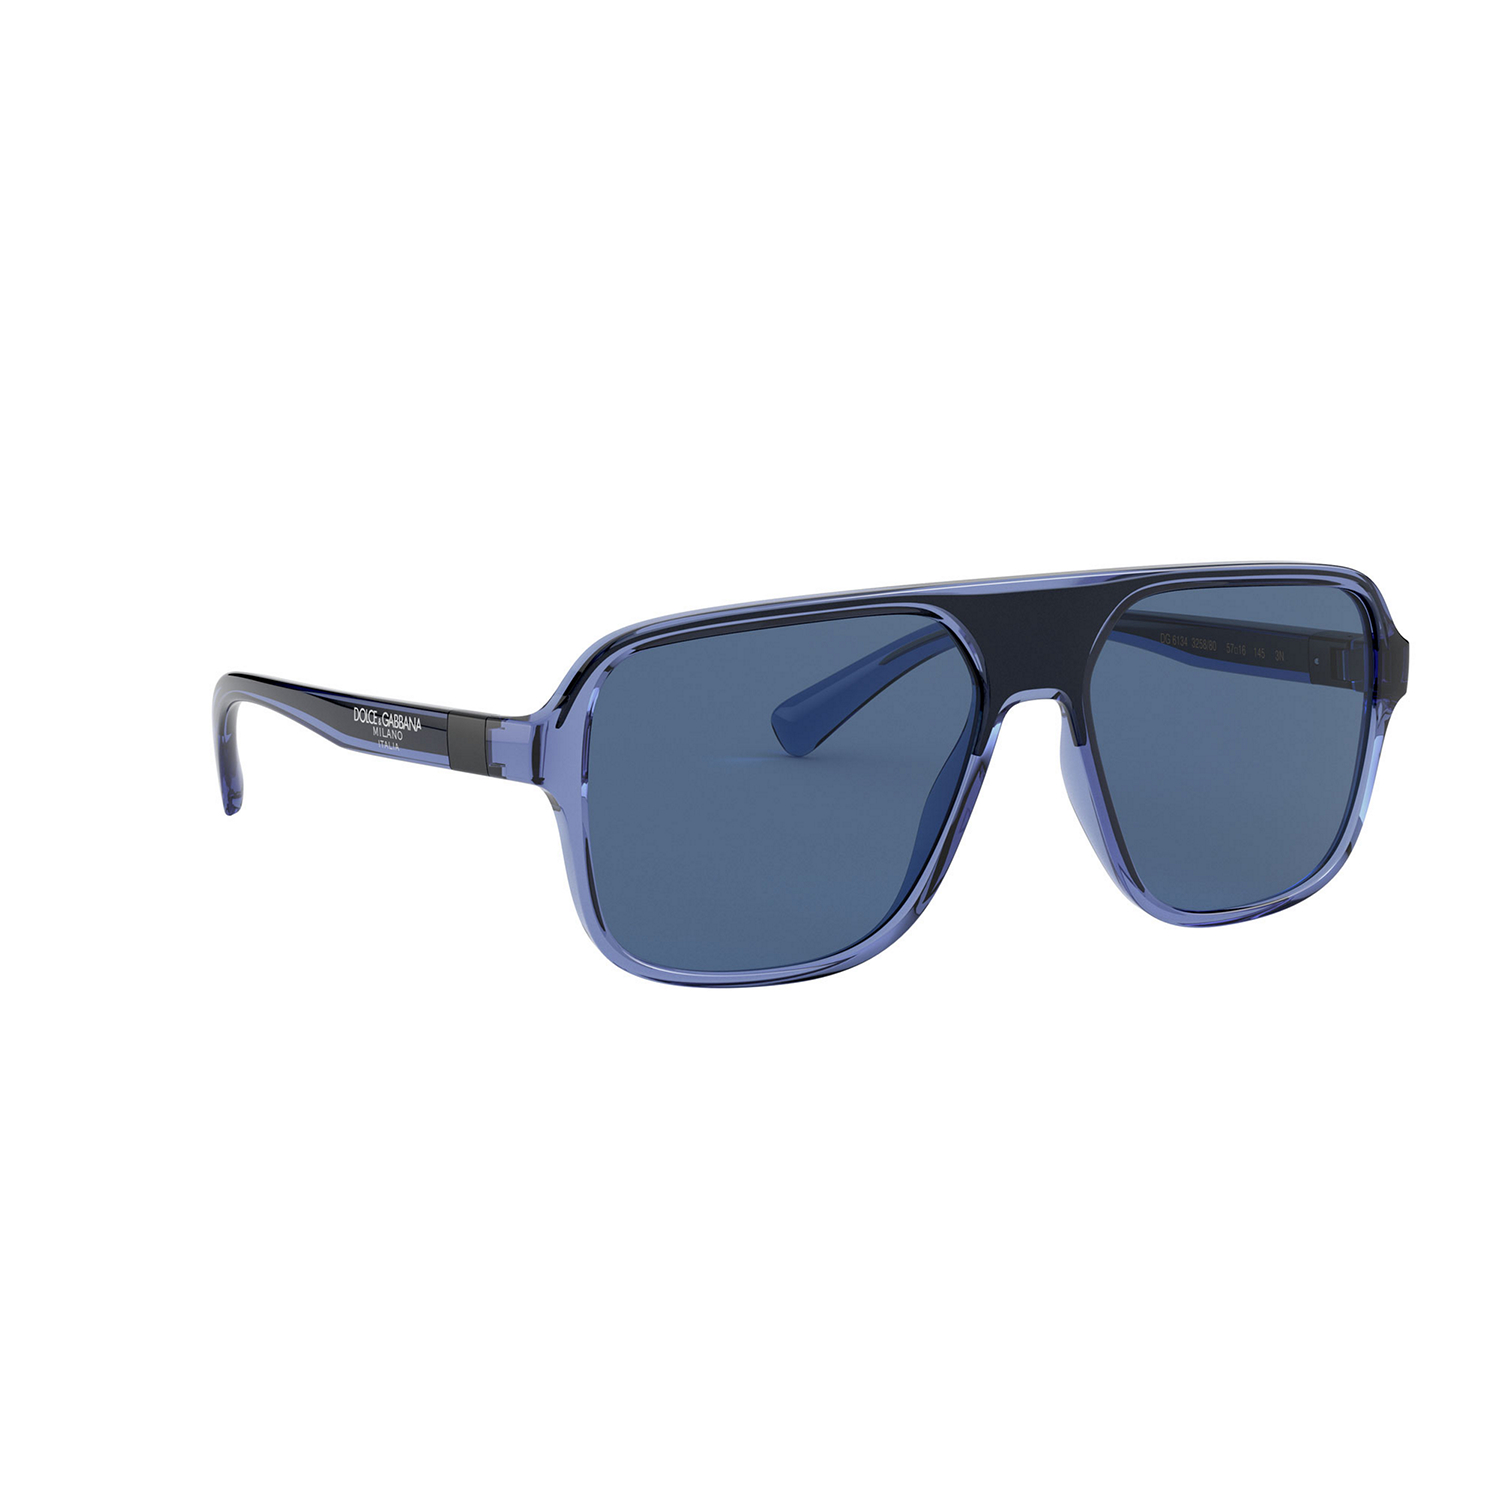 Square Sunglasses 0DG6134